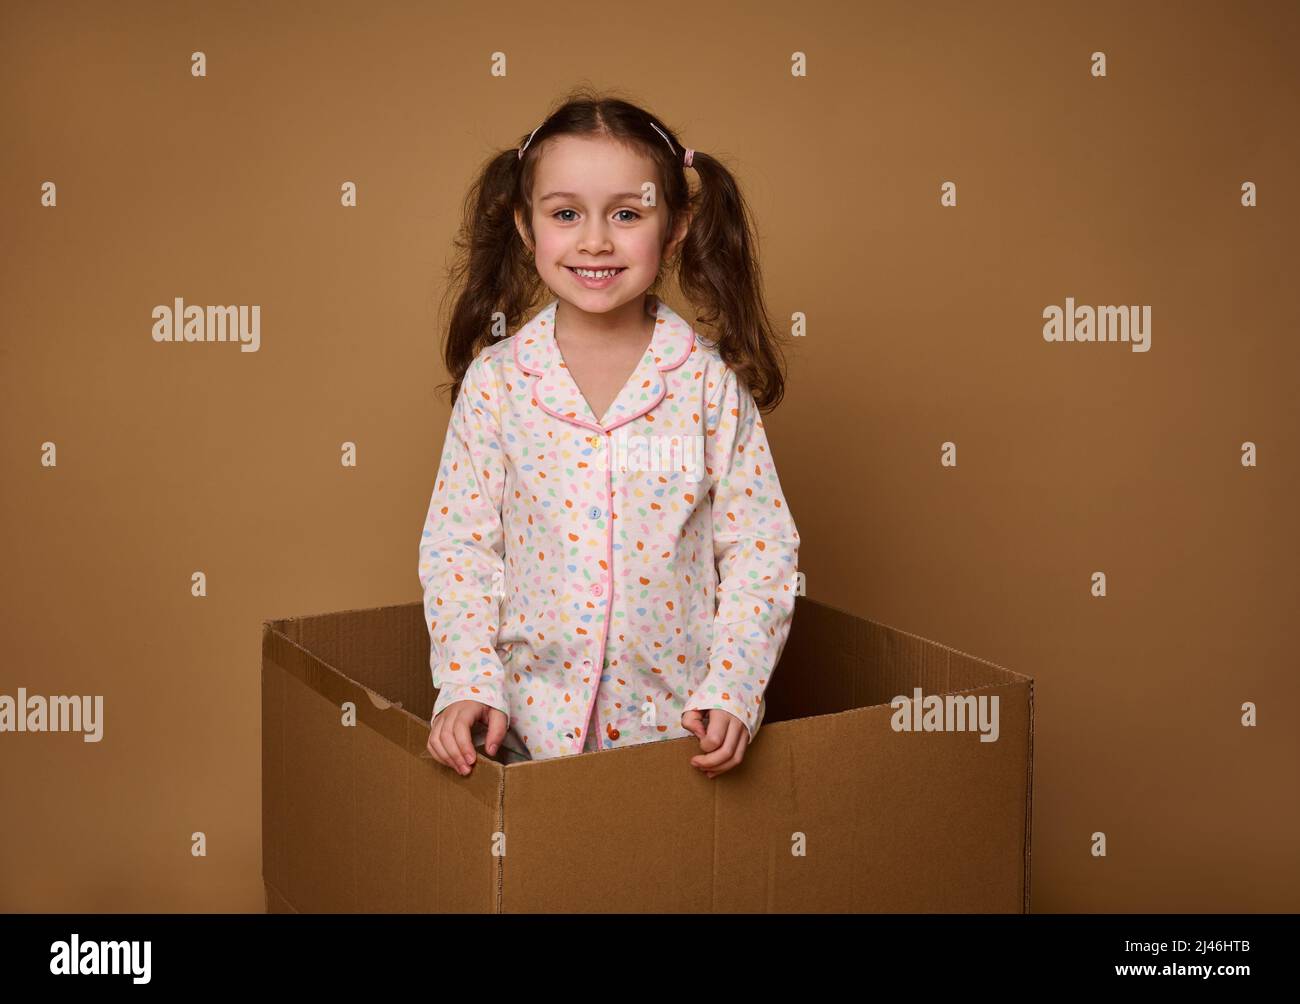 Adorable niño, europea niña de 4 años con dos colas onduladas en un pijama  brillante mirando la cámara de pie dentro de una caja de cartón, aislada  Fotografía de stock - Alamy